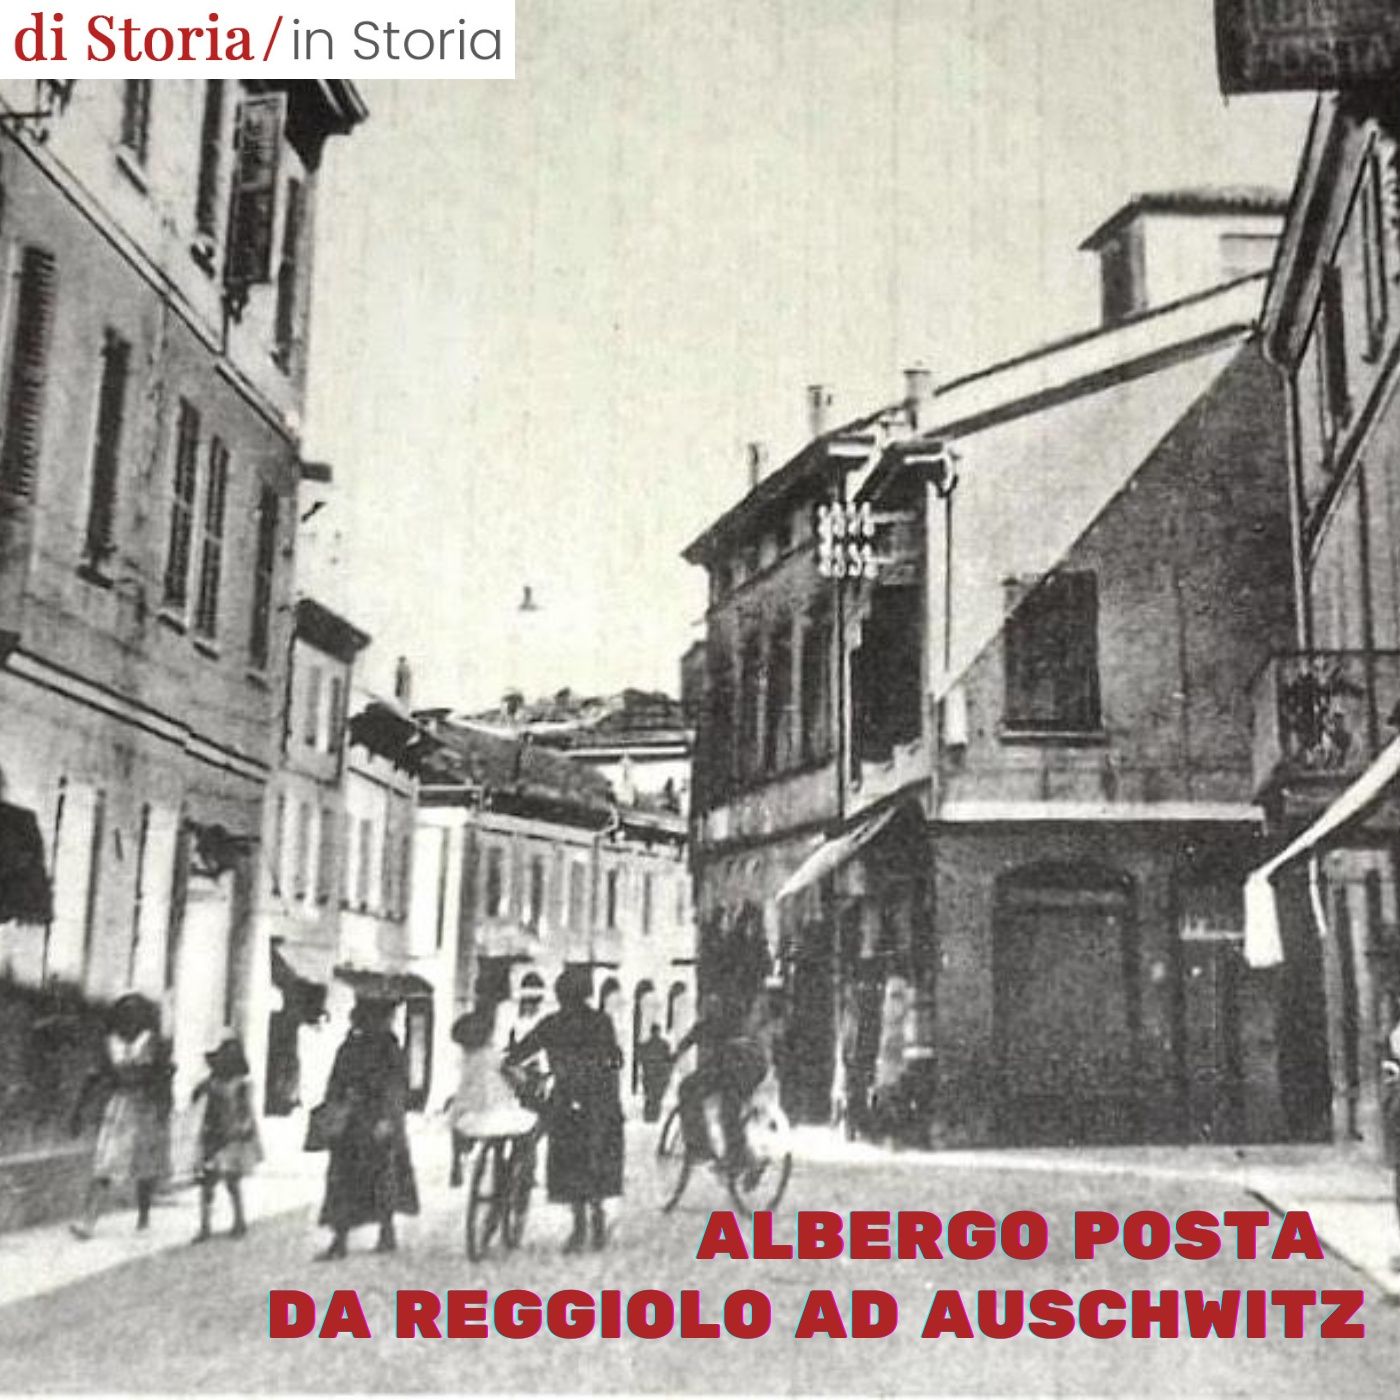 Albergo Posta da Reggiolo ad Auschwitz